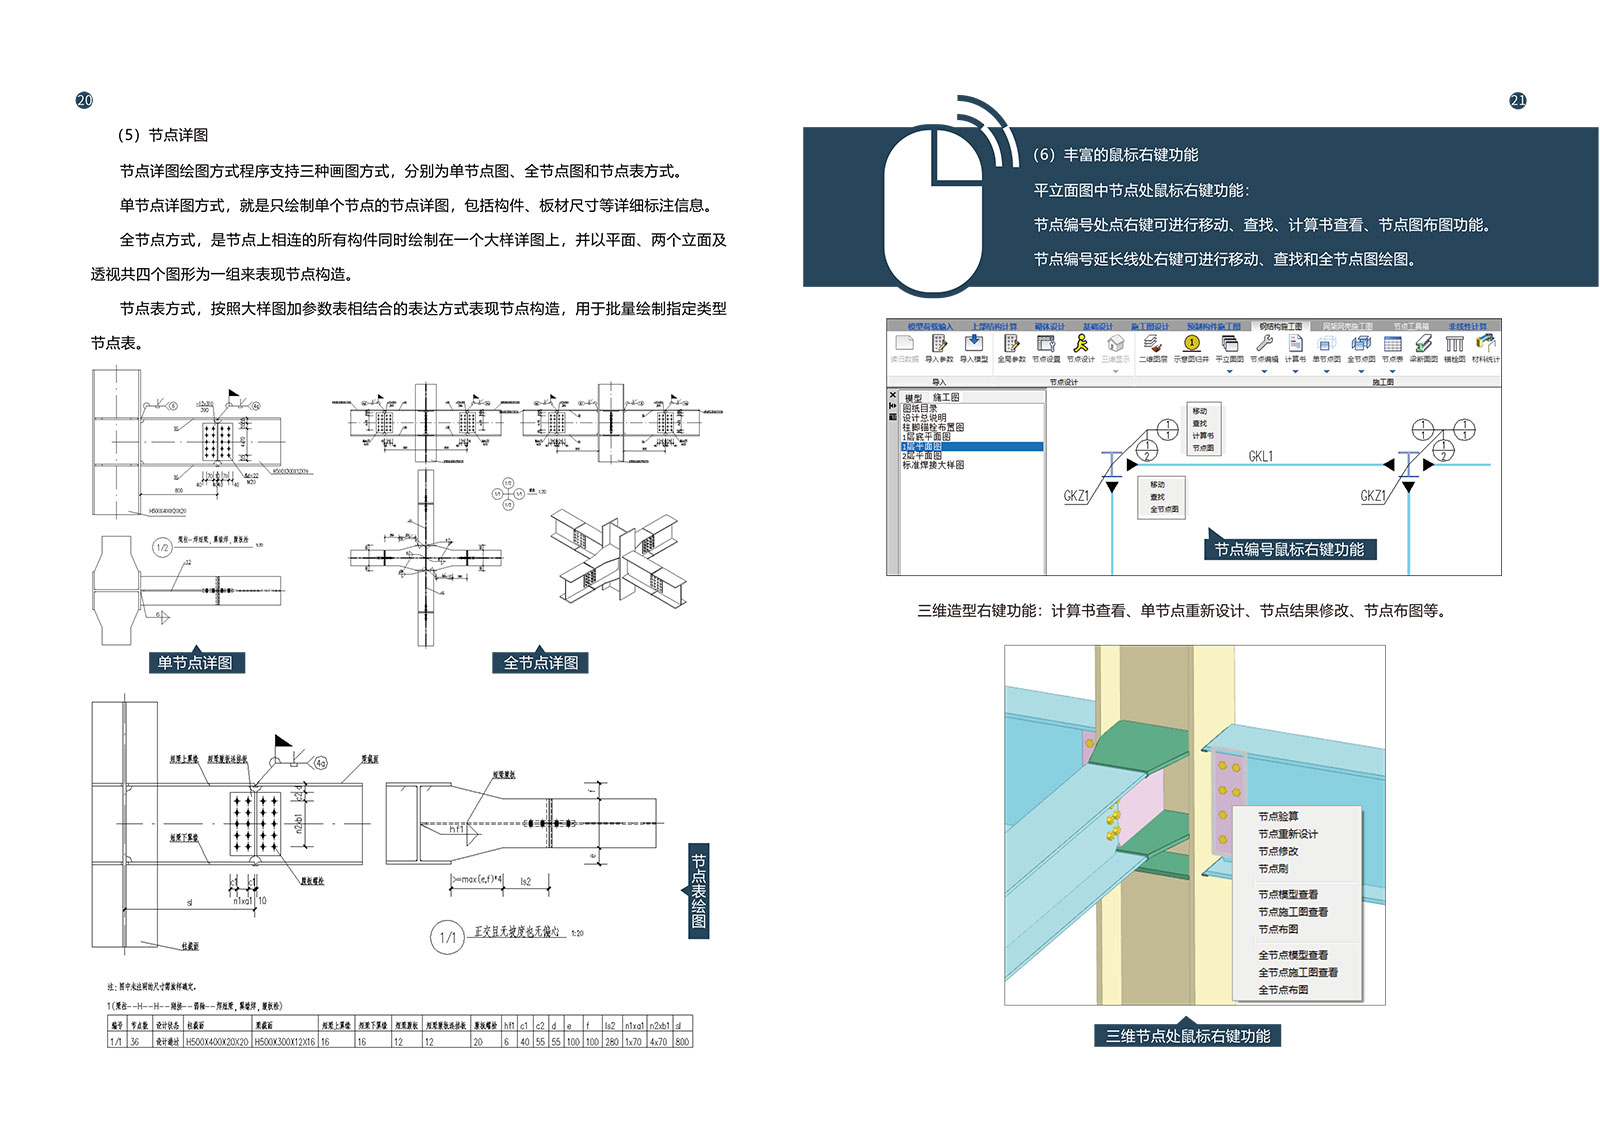 盈建科钢结构设计软件彩页-12.jpg